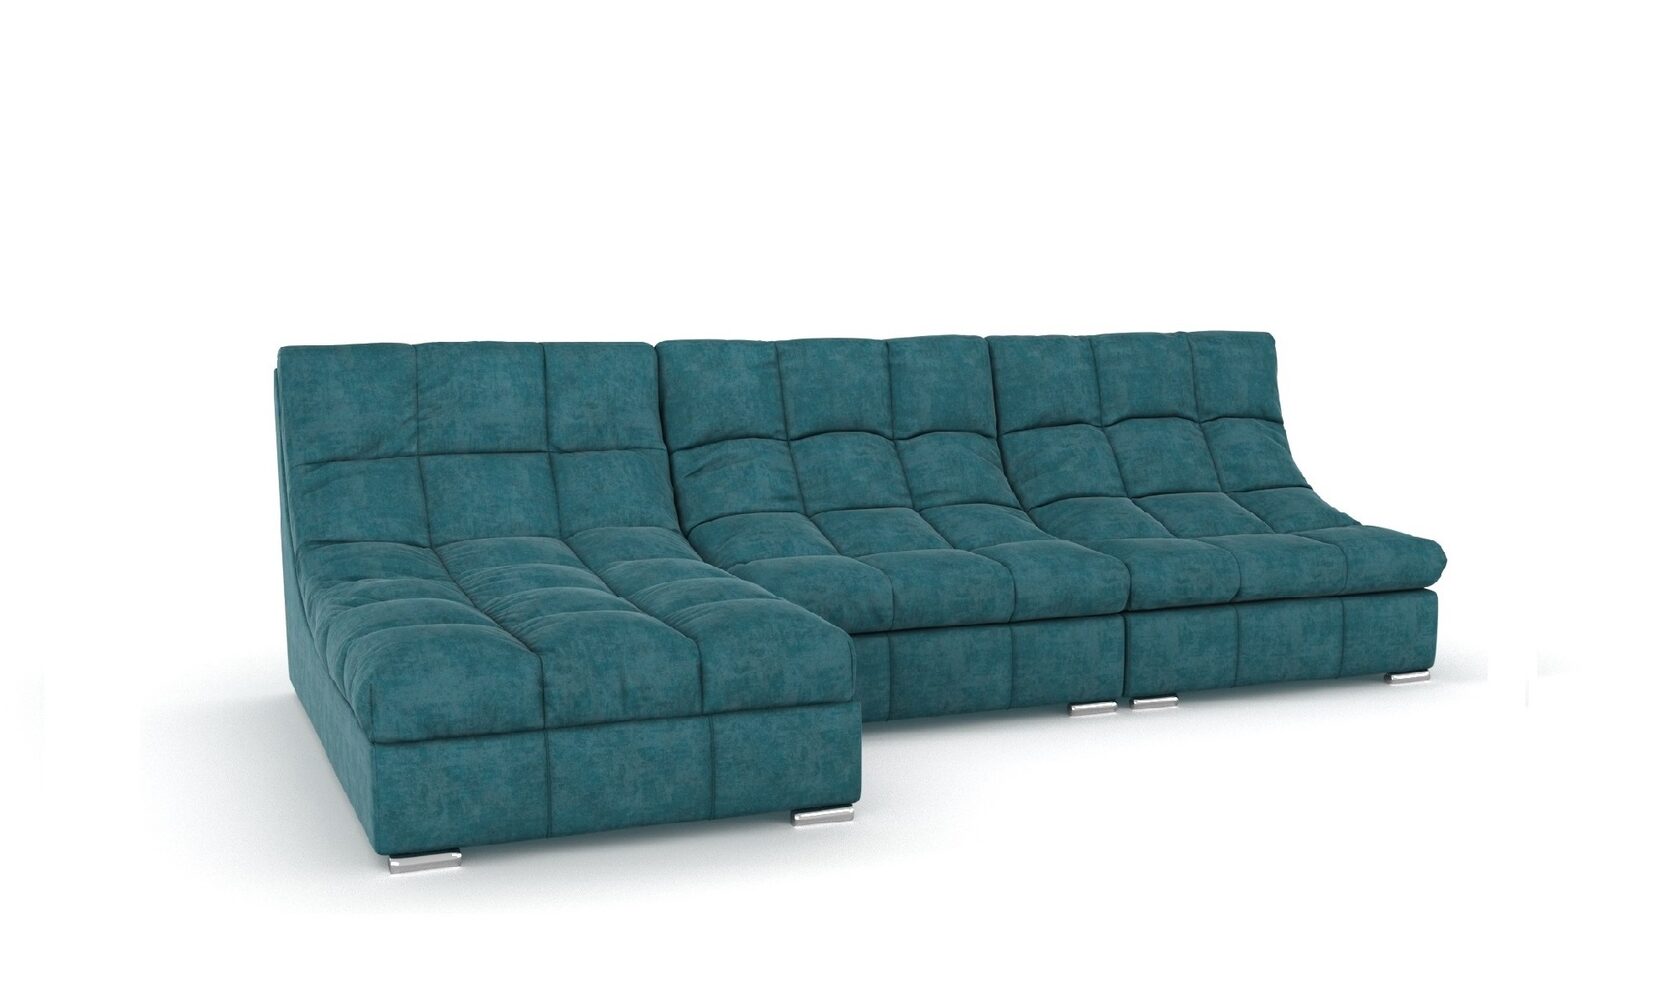 Диван модульный диван мебельная